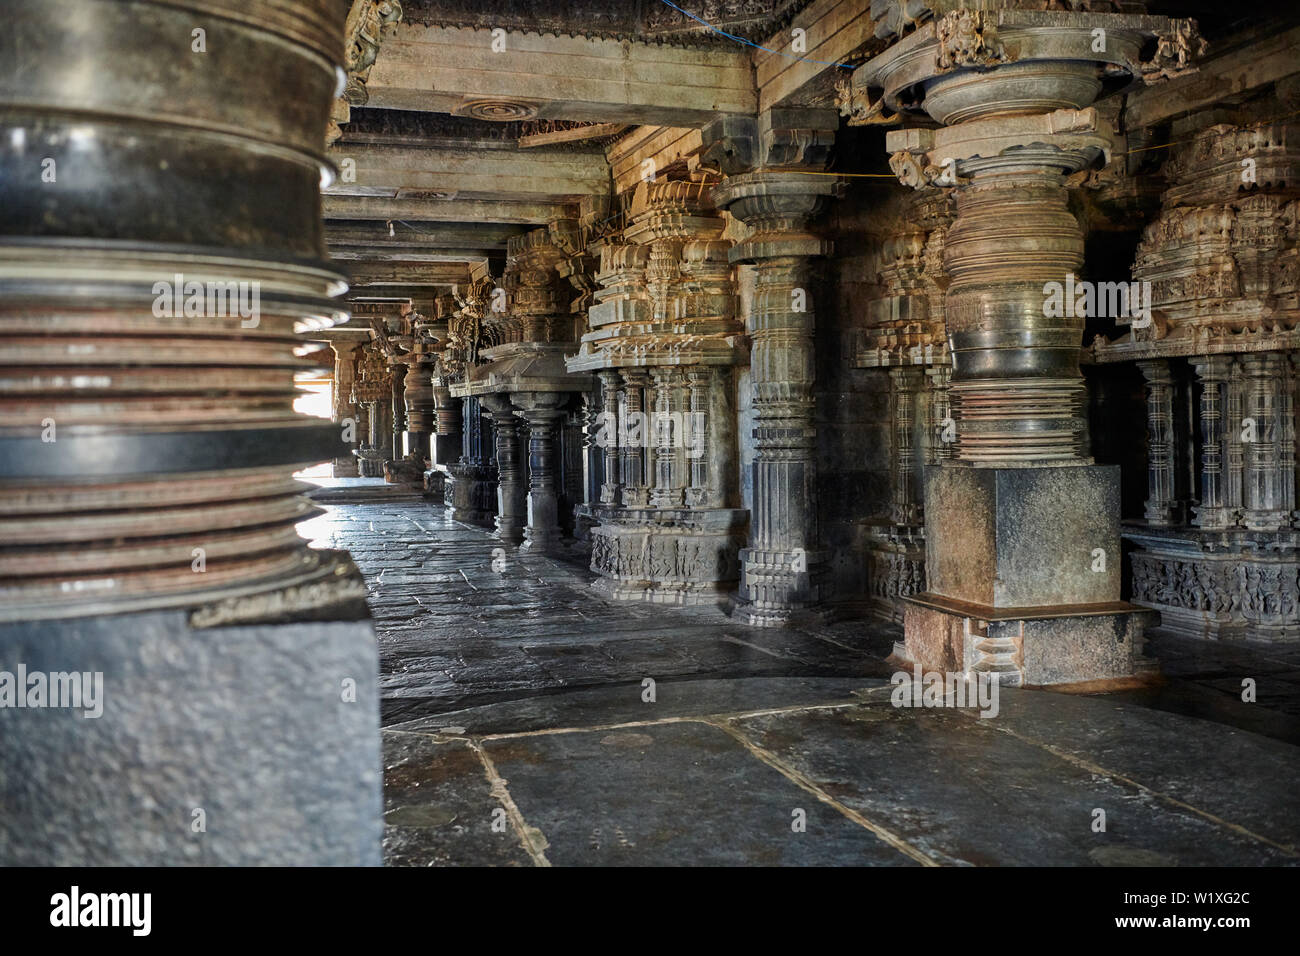 Innere Aufnahme der Halebid Hoysaleswara Jain Tempel, Dwarasamudra (Tor zur See), Halebidu, Hassan, Karnataka, Indien Stockfoto